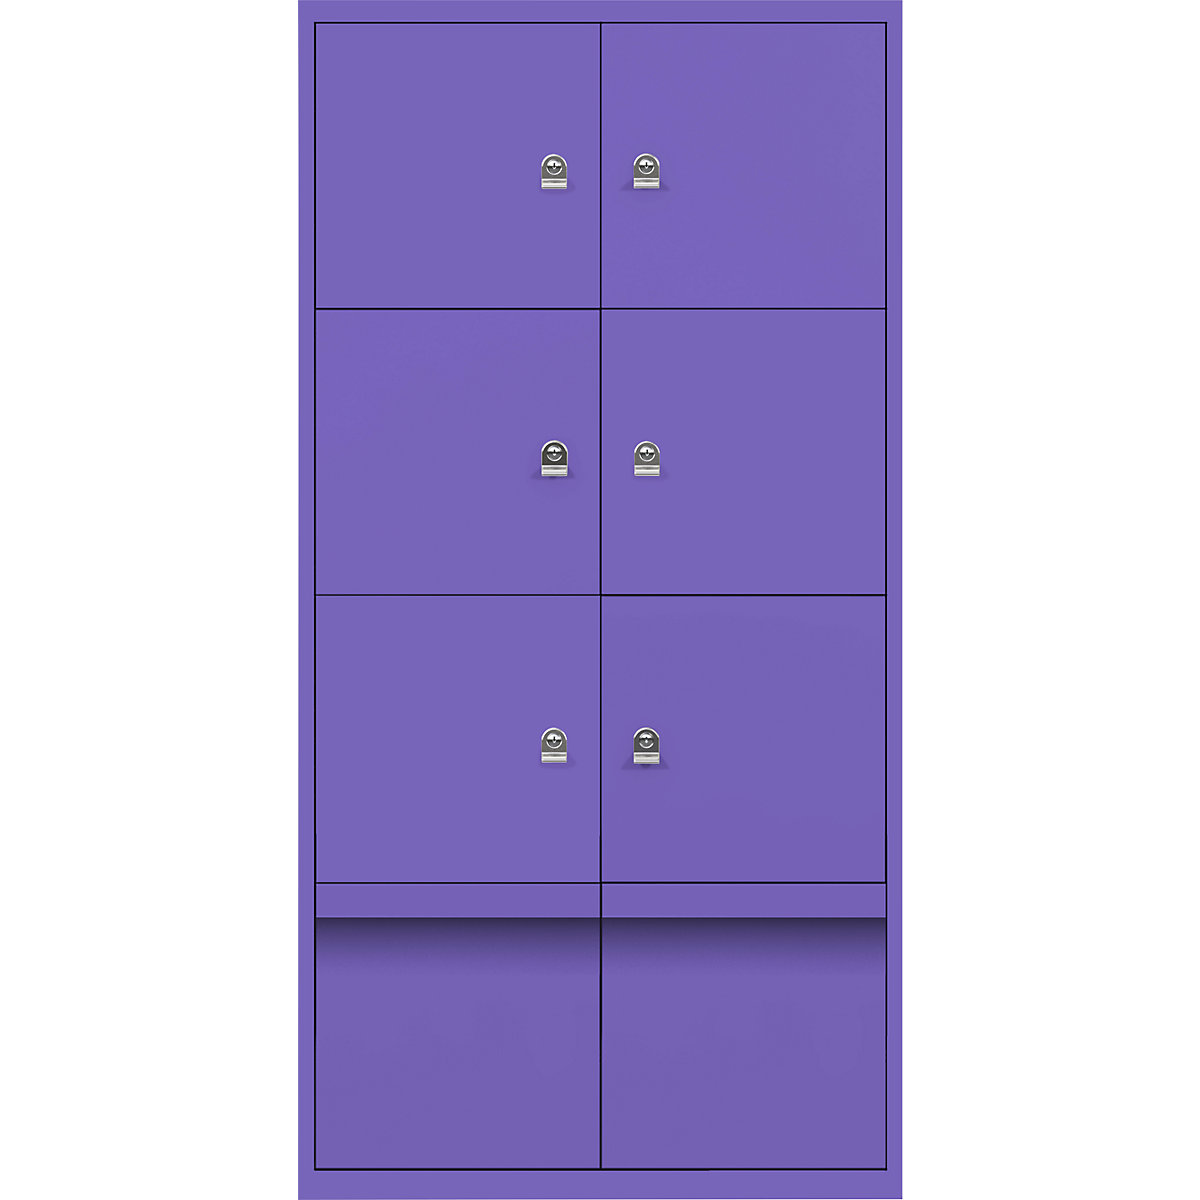 Omara s predelki z zaklepanjem LateralFile™ – BISLEY, 6 predelkov z zaklepanjem in 2 predala, višina po 375 mm, vijoličaste barve-1